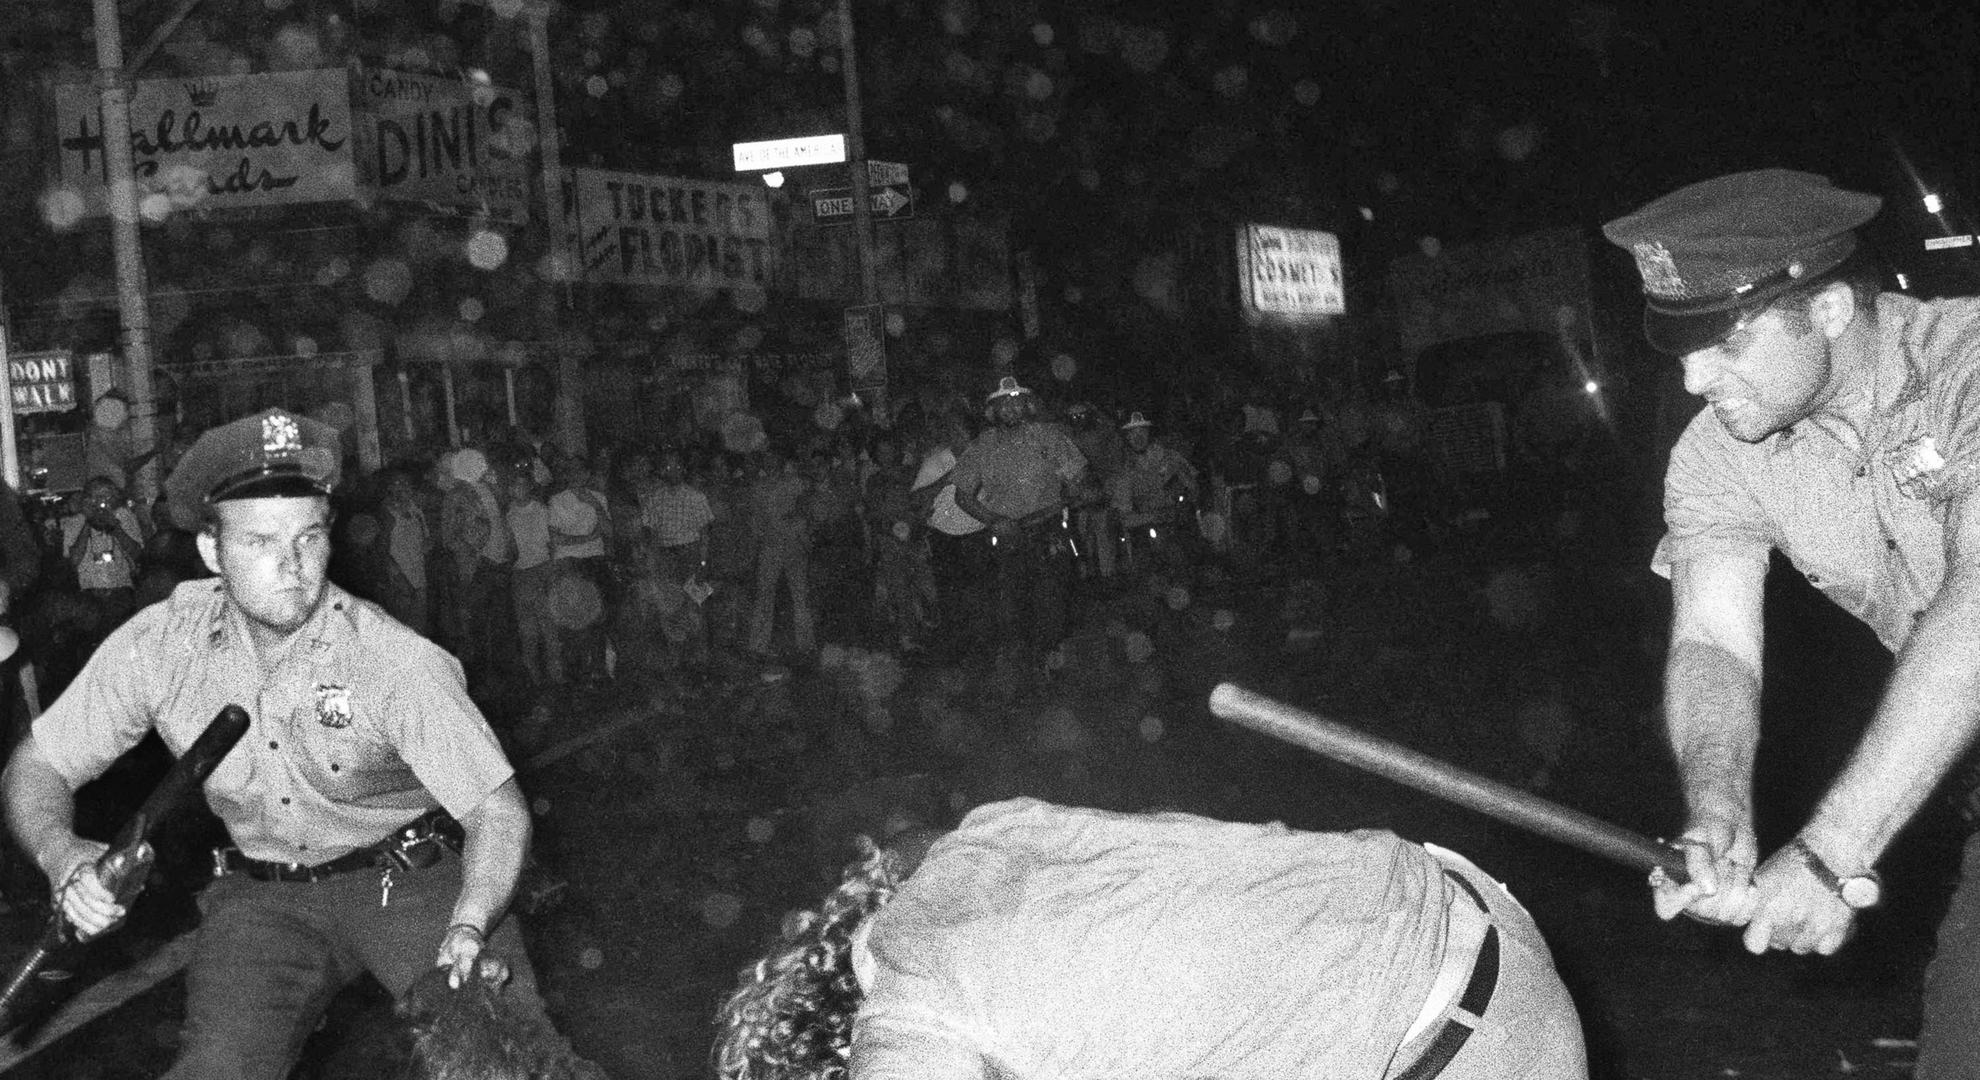 Nueva York, agosto de 1970. Policías agreden a dos jóvenes durante una confrontación en Greenwich Village, luego de una marcha por los derechos LGBT. Un año antes, en 1969, ocurrieron los disturbios de Stonewall, un hecho catalizador en la expansión del activismo por los derechos de las minorías sexuales en todo el mundo.